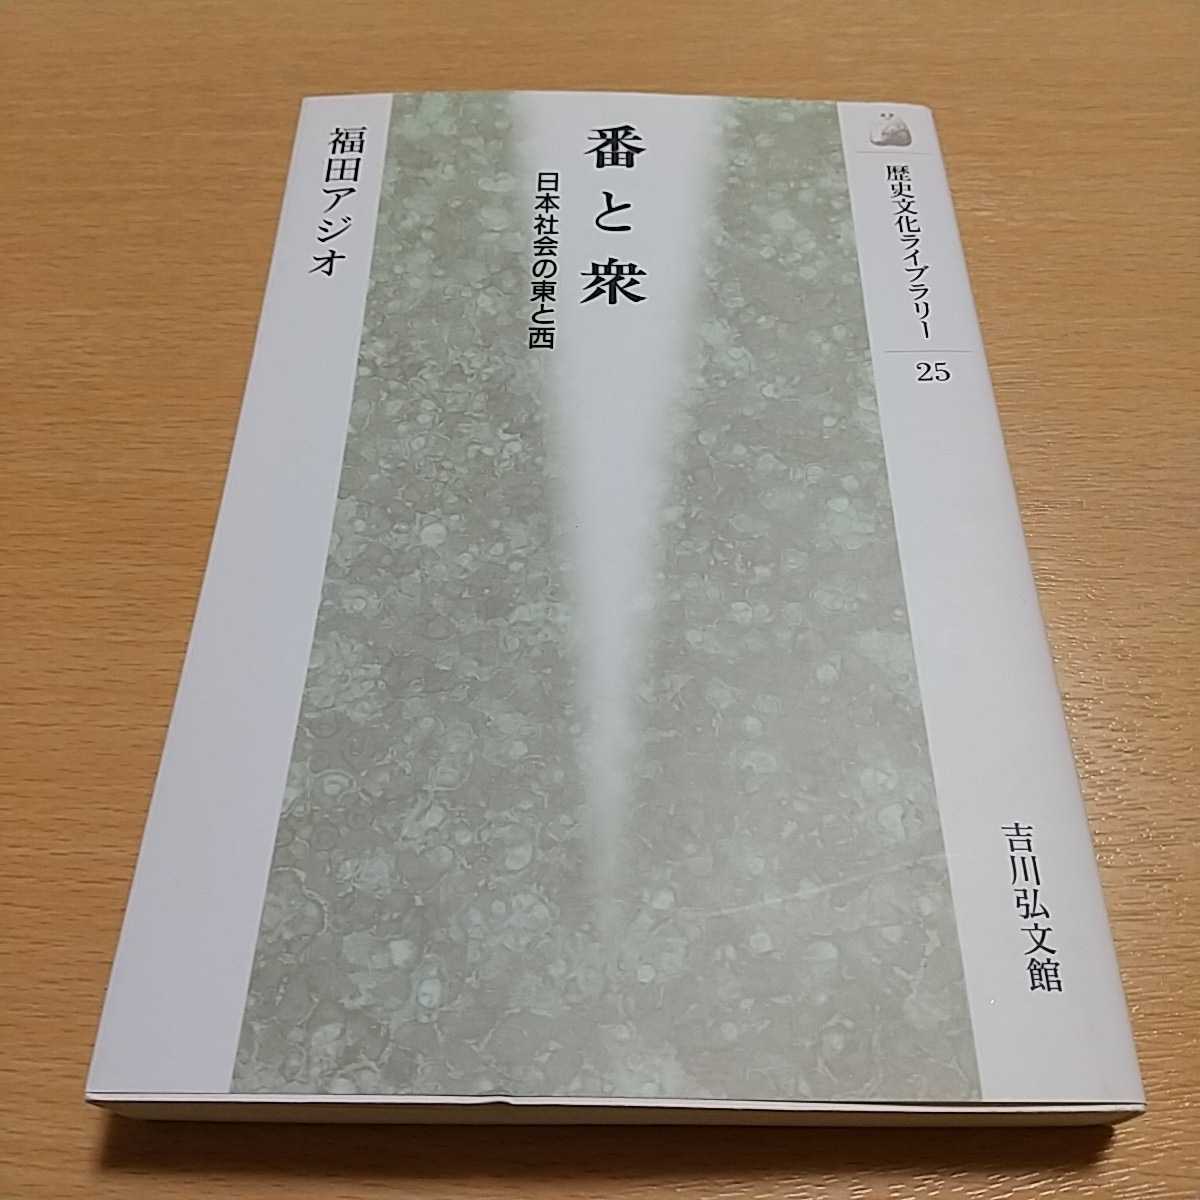 番と衆 日本社会の東と西 福田アジオ 歴史文化ライブラリー 25 中古 0220029_画像1